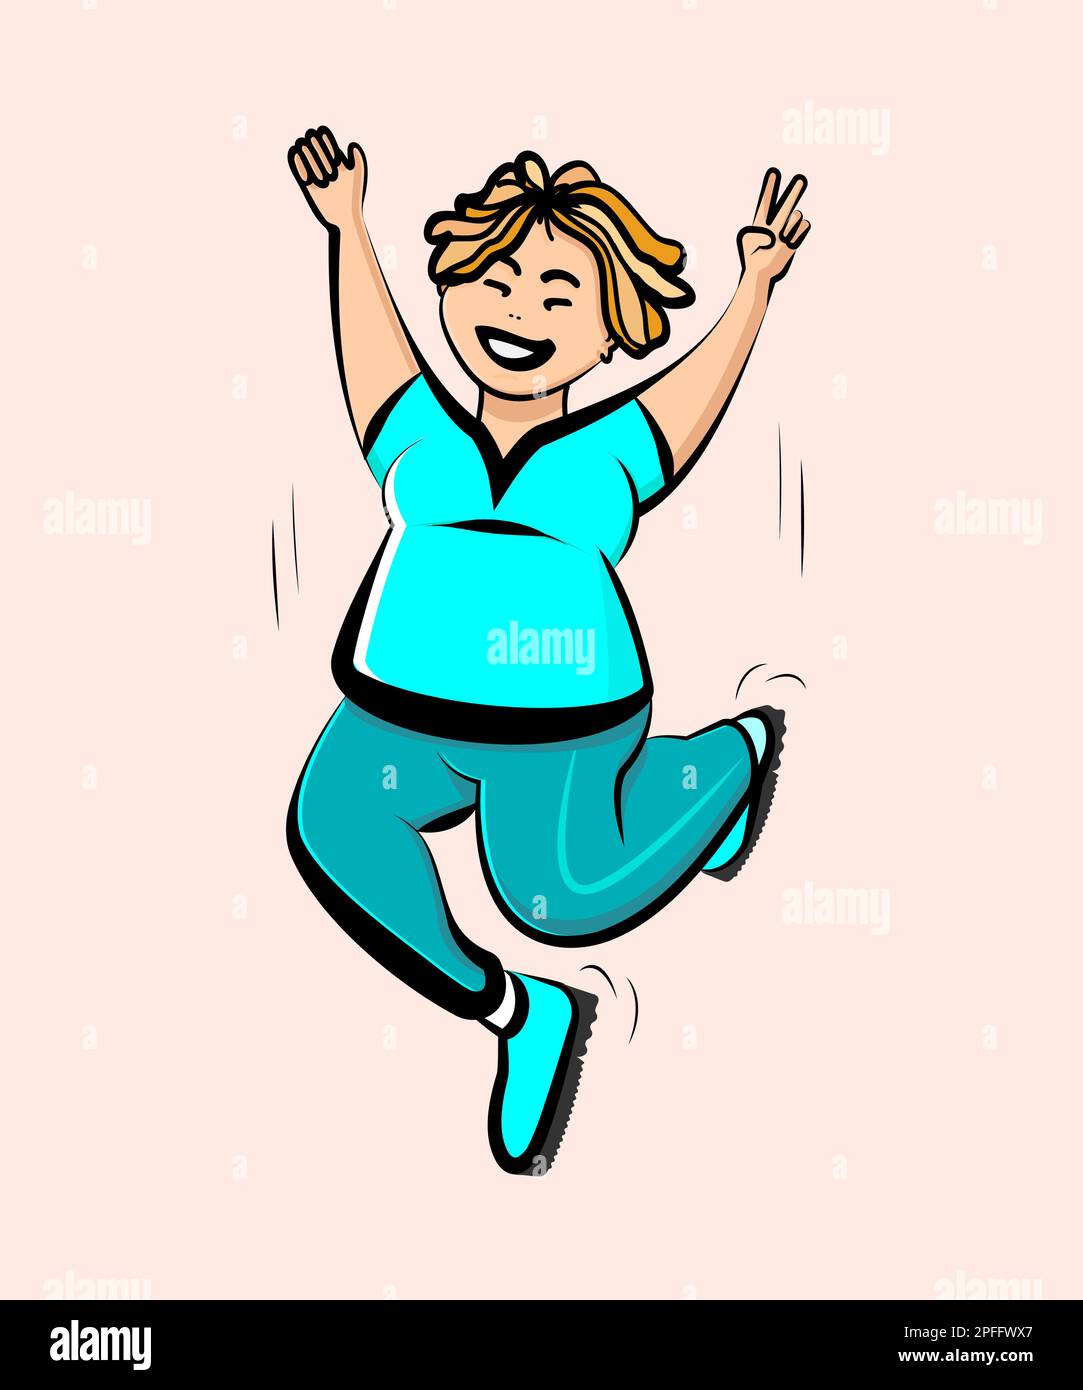 Eine übergewichtige, glückliche Frau in Sportbekleidung springt. Körperpositive Bewegung und Feminismus, psychische Gesundheit und gute Stimmung. Vektordarstellung Stock Vektor